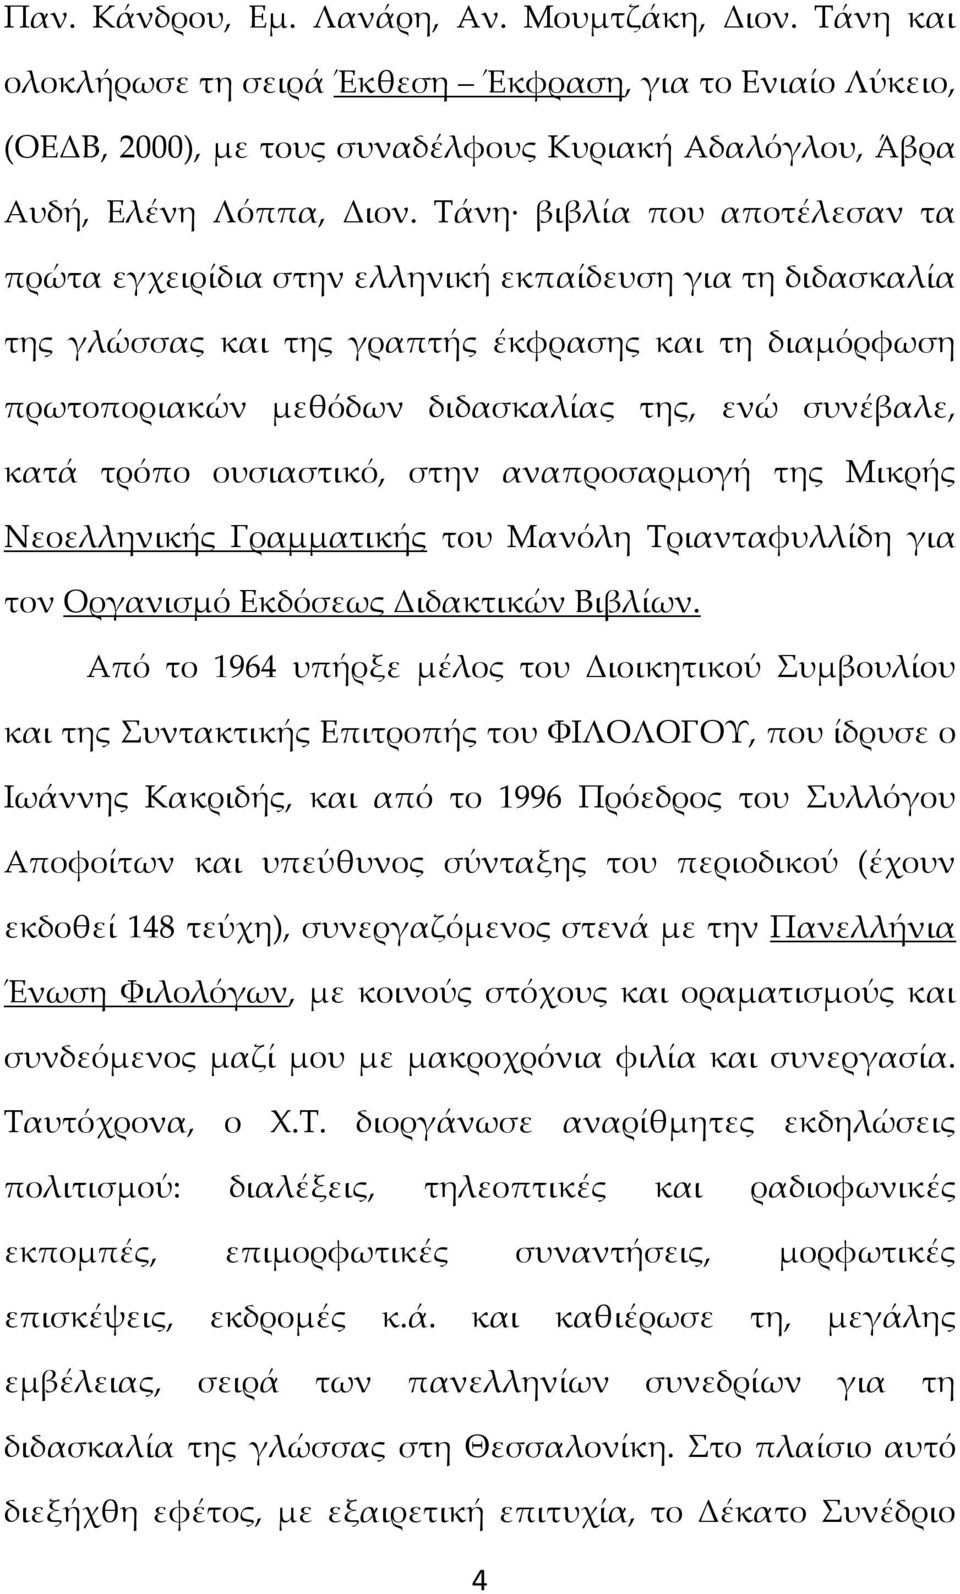 κατά τρόπο ουσιαστικό, στην αναπροσαρμογή της Μικρής Νεοελληνικής Γραμματικής του Μανόλη Τριανταφυλλίδη για τον Οργανισμό Εκδόσεως Διδακτικών Βιβλίων.